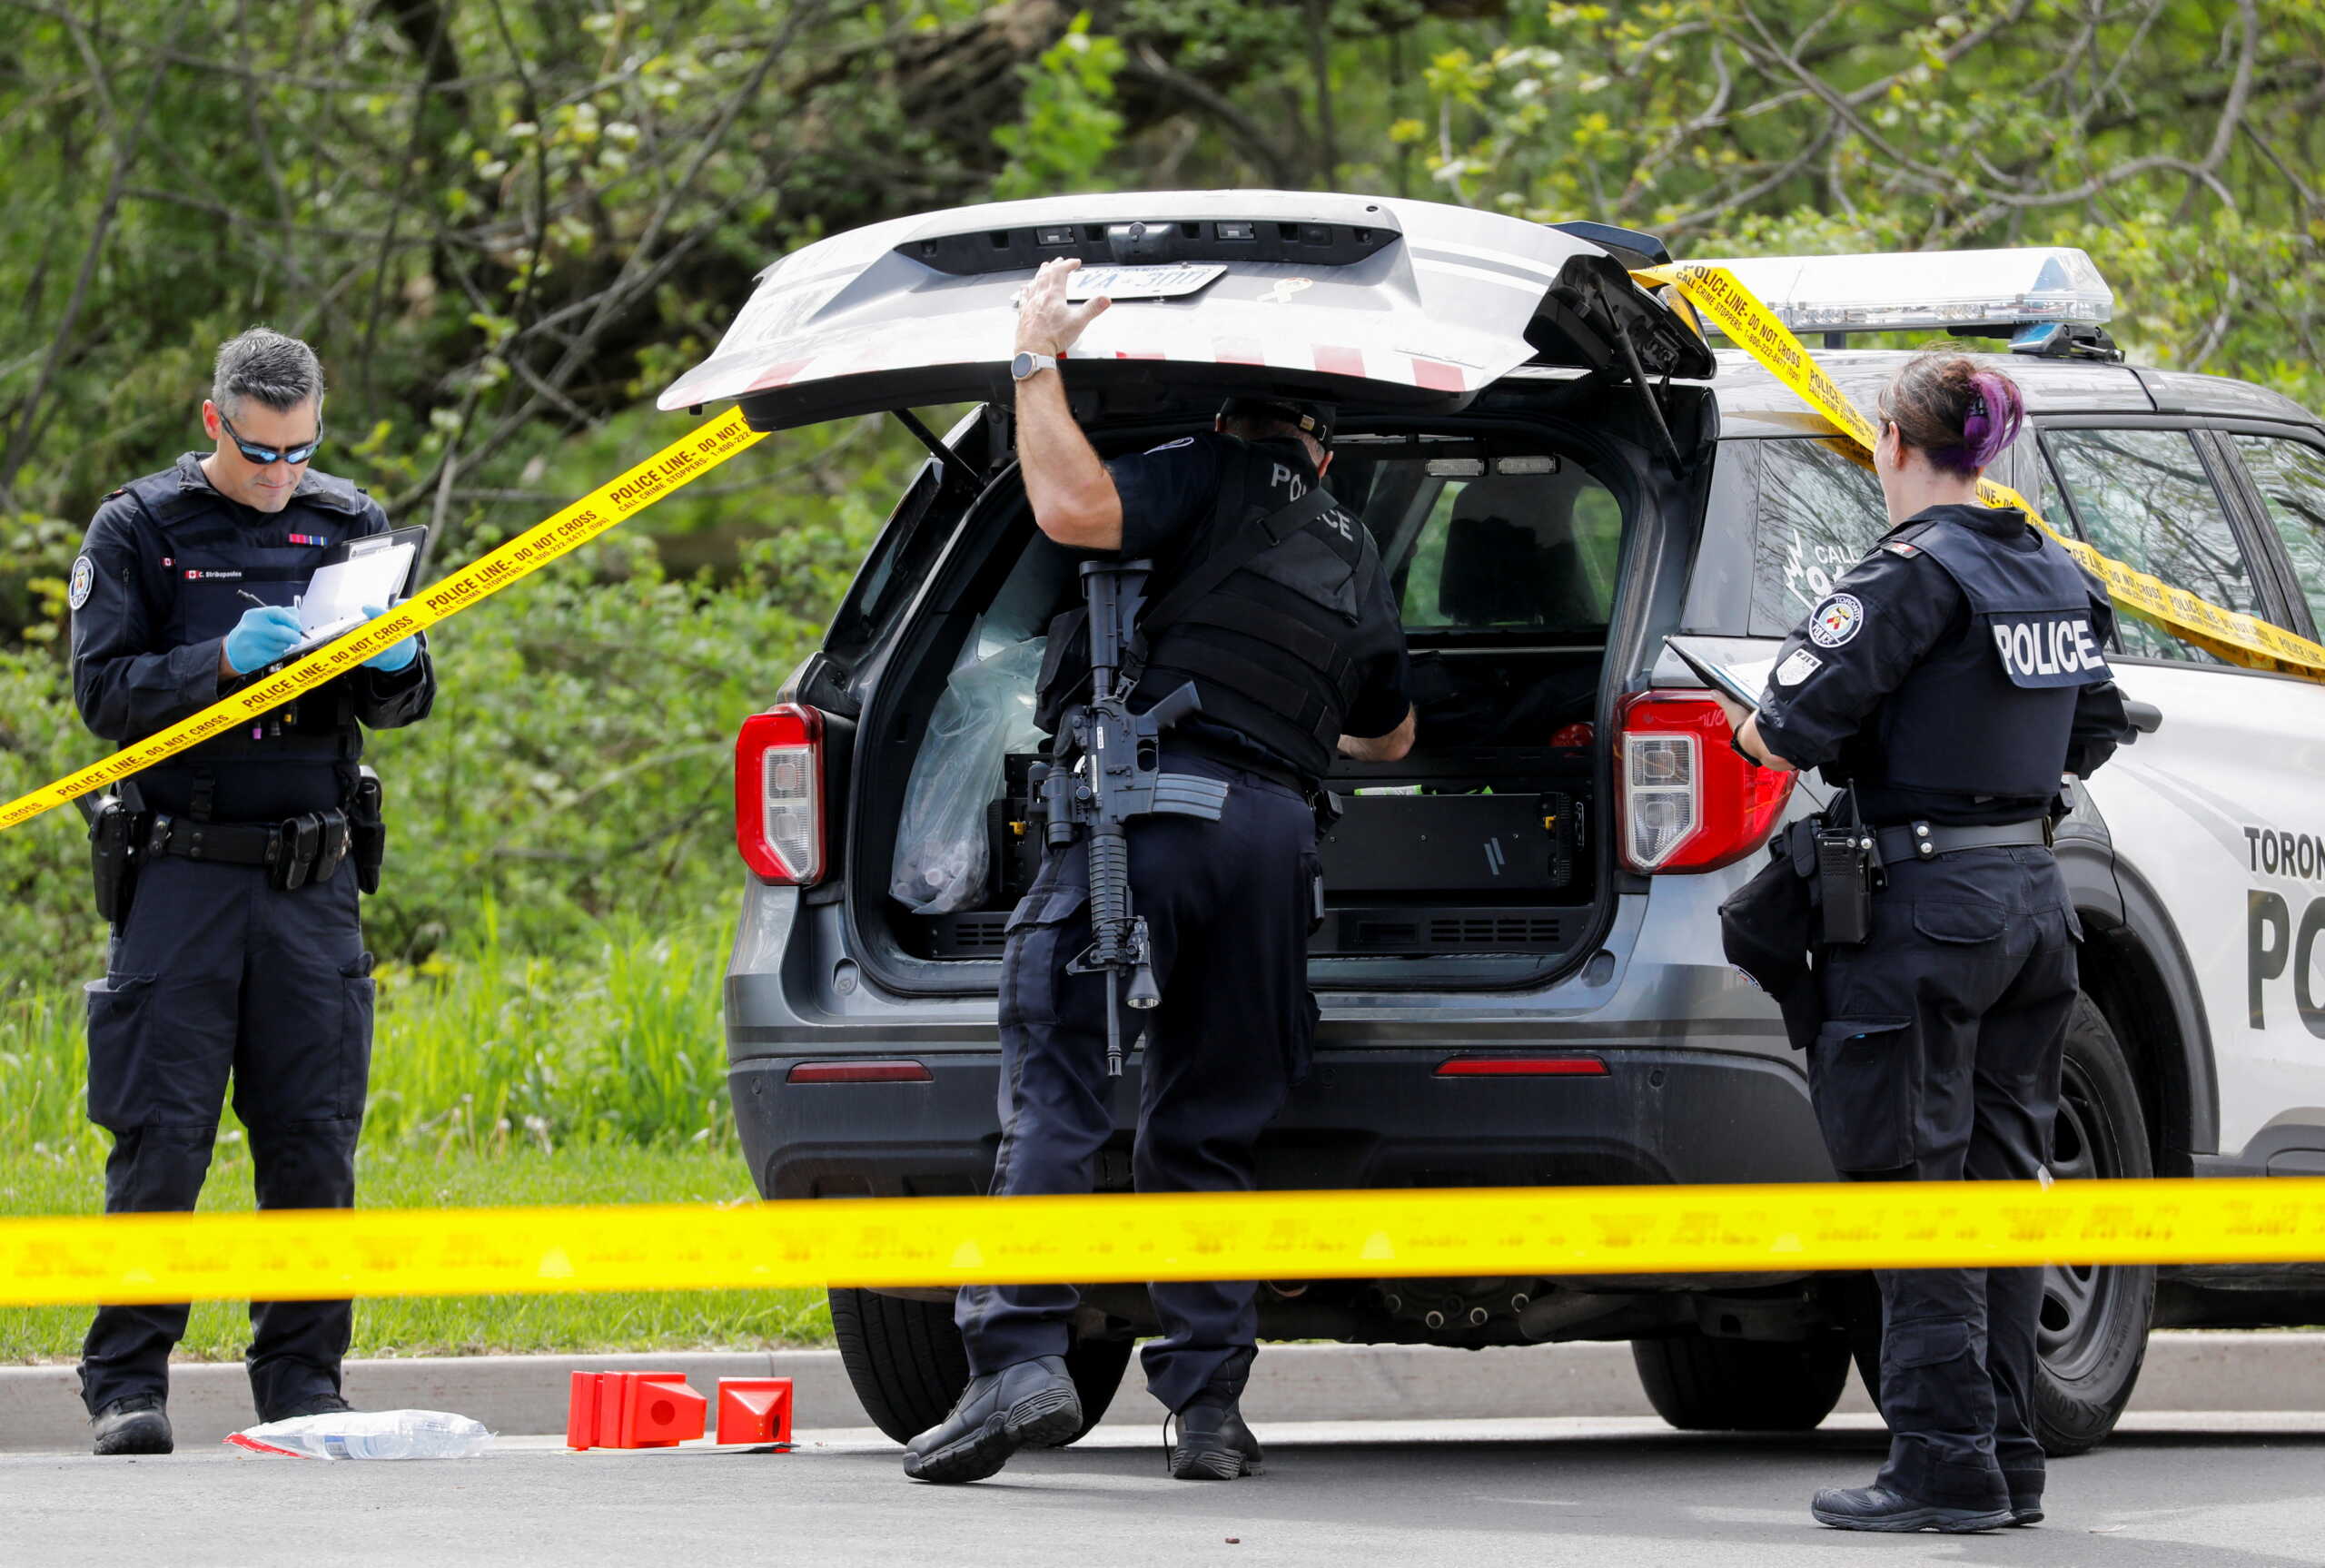 Καναδάς: Νεκρός ο νεαρός που κυκλοφορούσε με όπλο κοντά σε σχολεία και πυροβολήθηκε από την αστυνομία